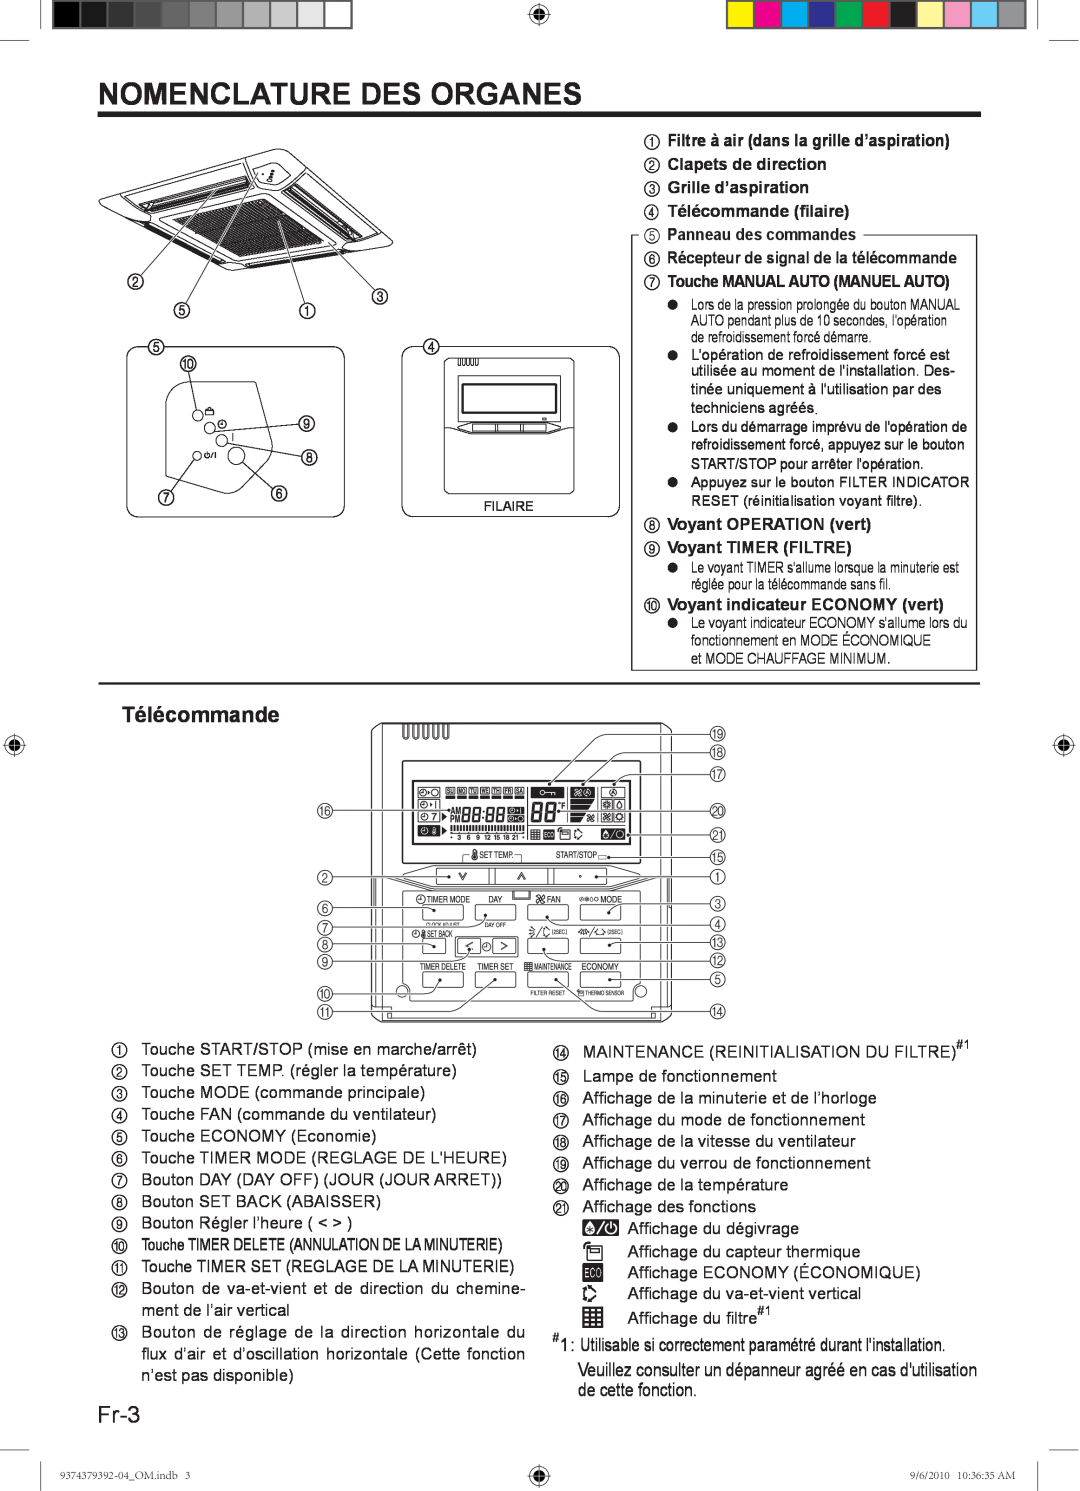 Fujitsu Halcyon Air Conditioner, 9374379392-04 manual Nomenclature Des Organes, Fr-3, Télécommande 